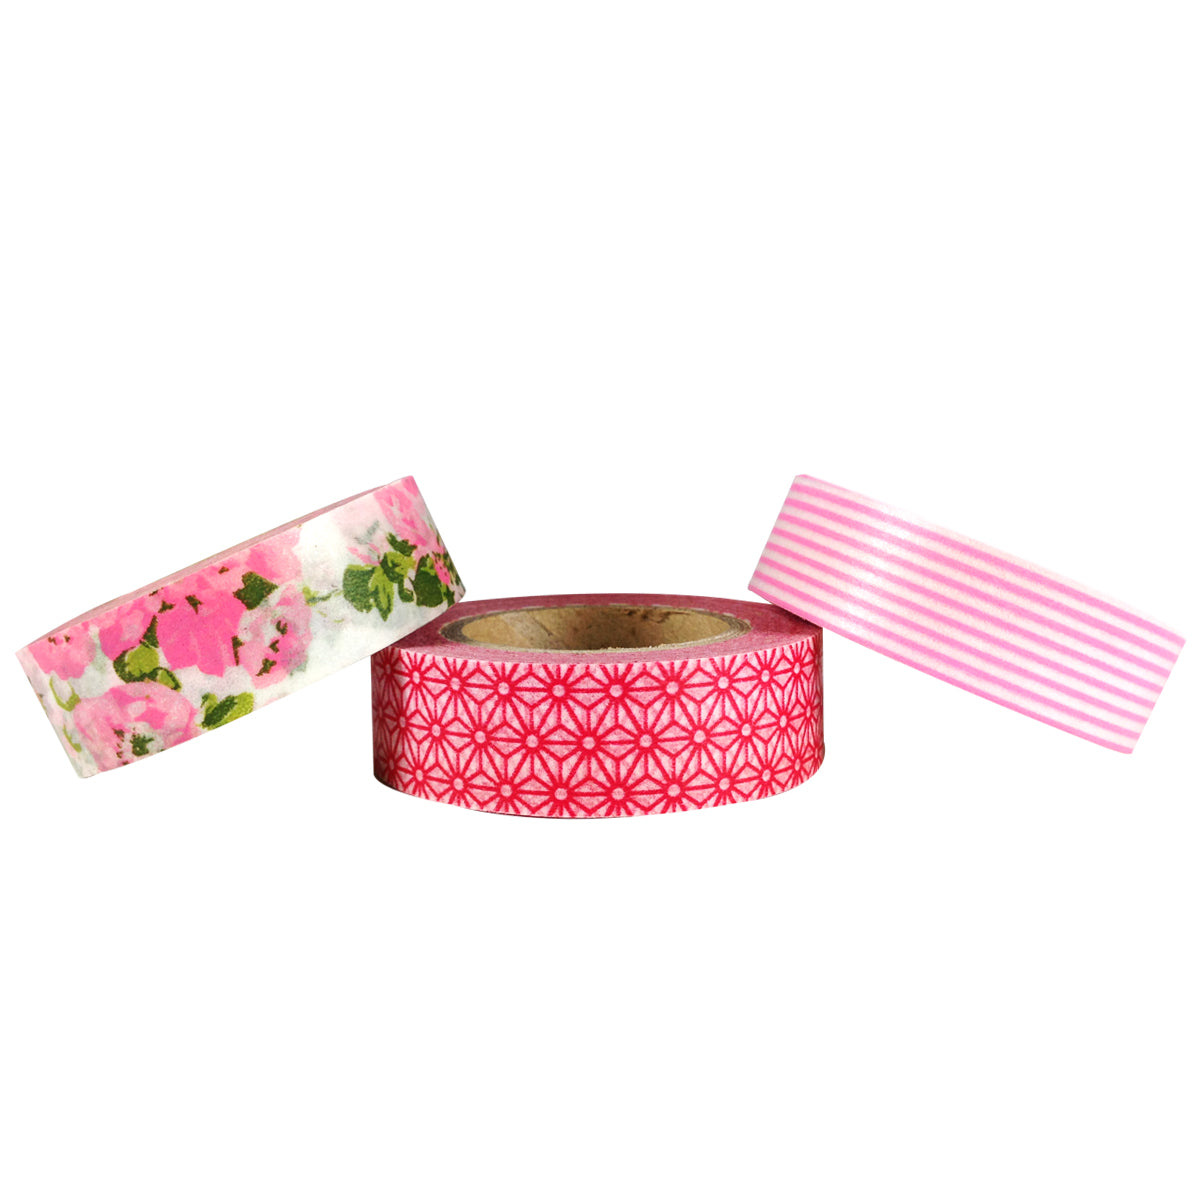 Wrapables Pink Passion Japanese Washi Masking Tape (Set of 3)